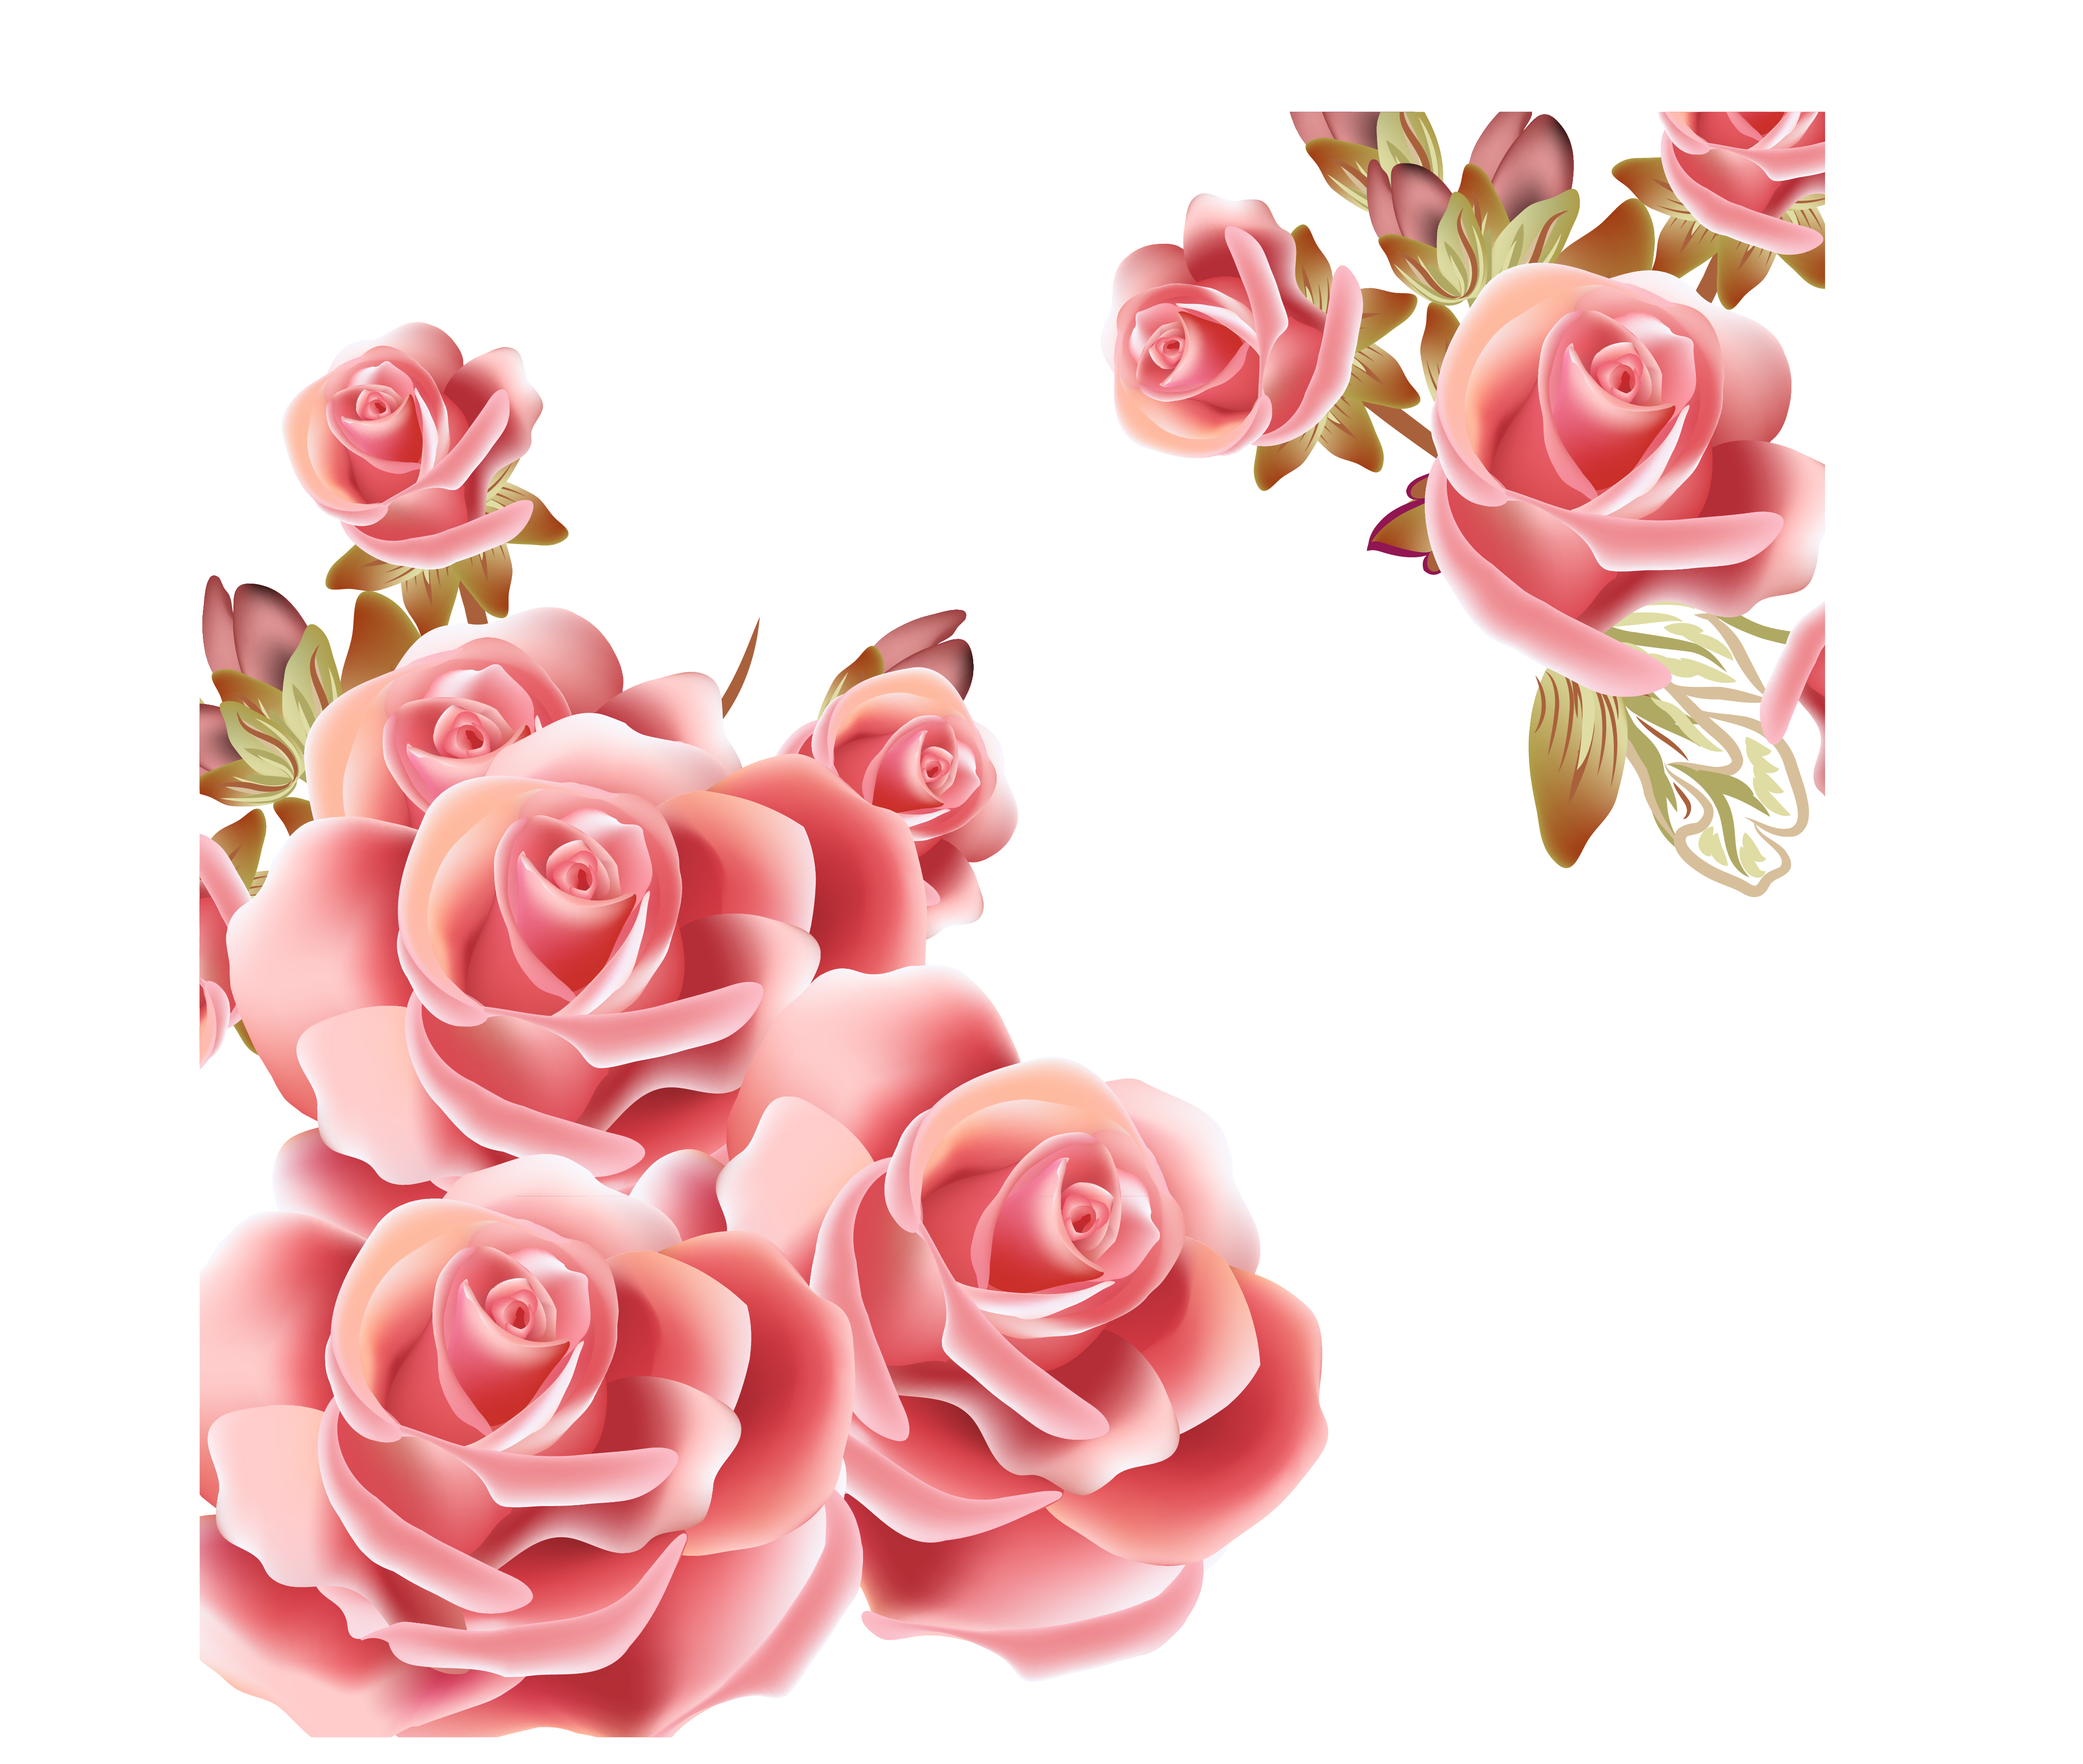 Flower rose pink.